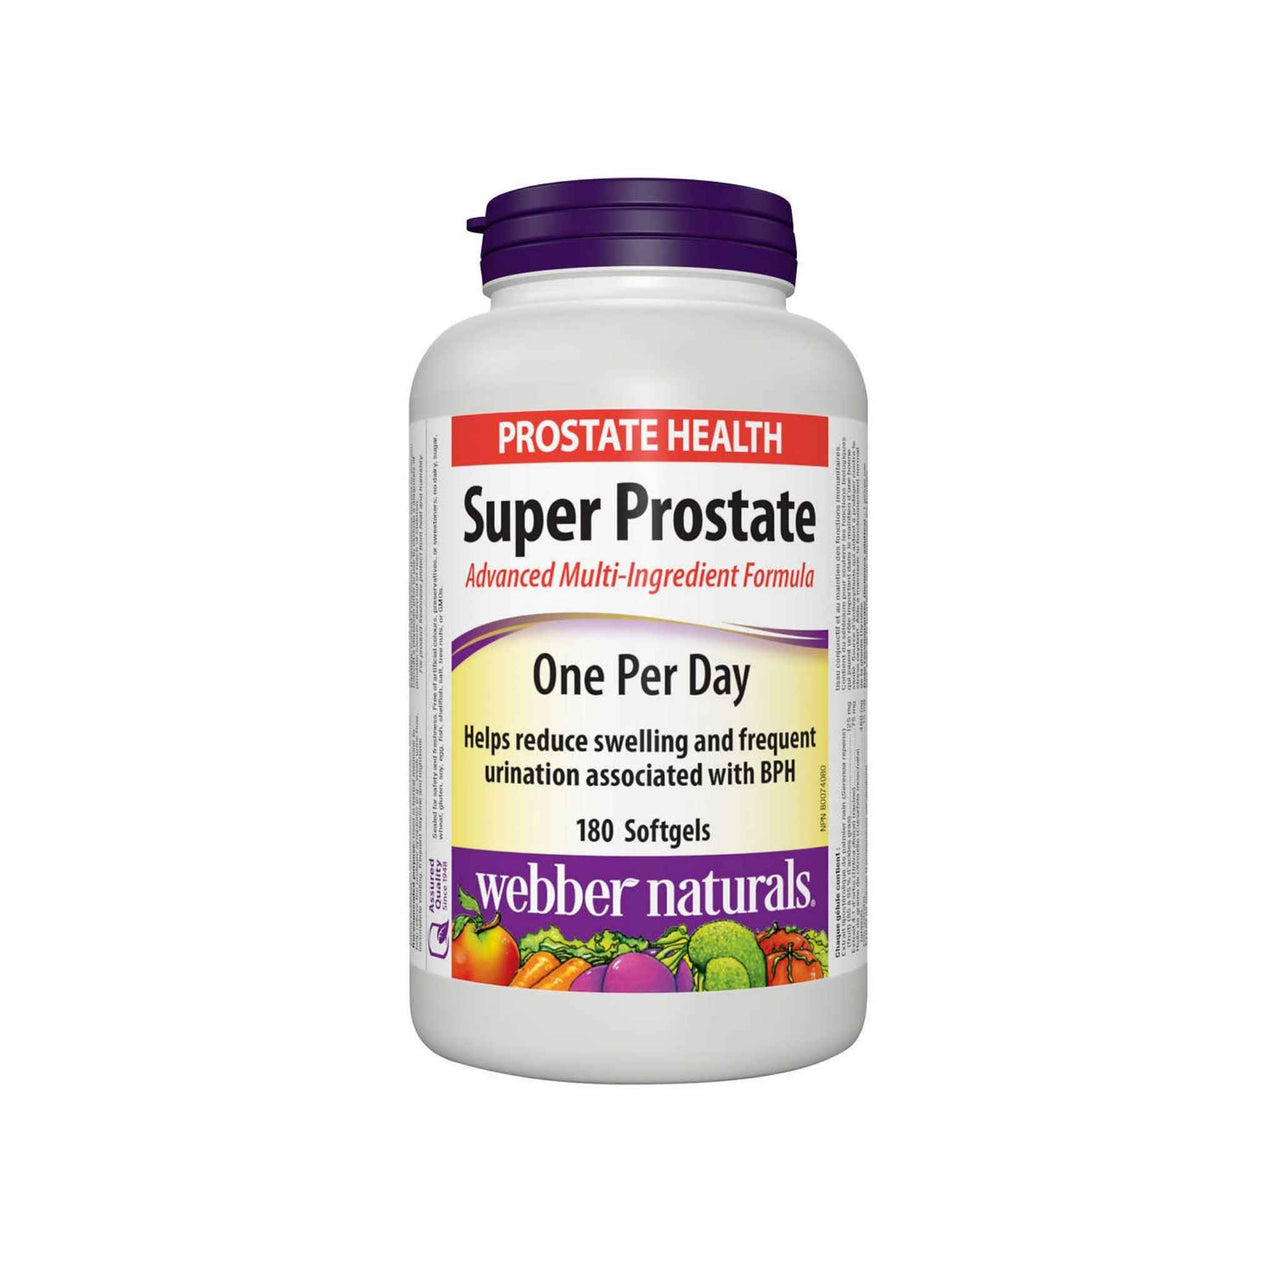 Image of Webber Naturals Super Prostate Advanced Multi-Ingredient Formula, 180 softgels